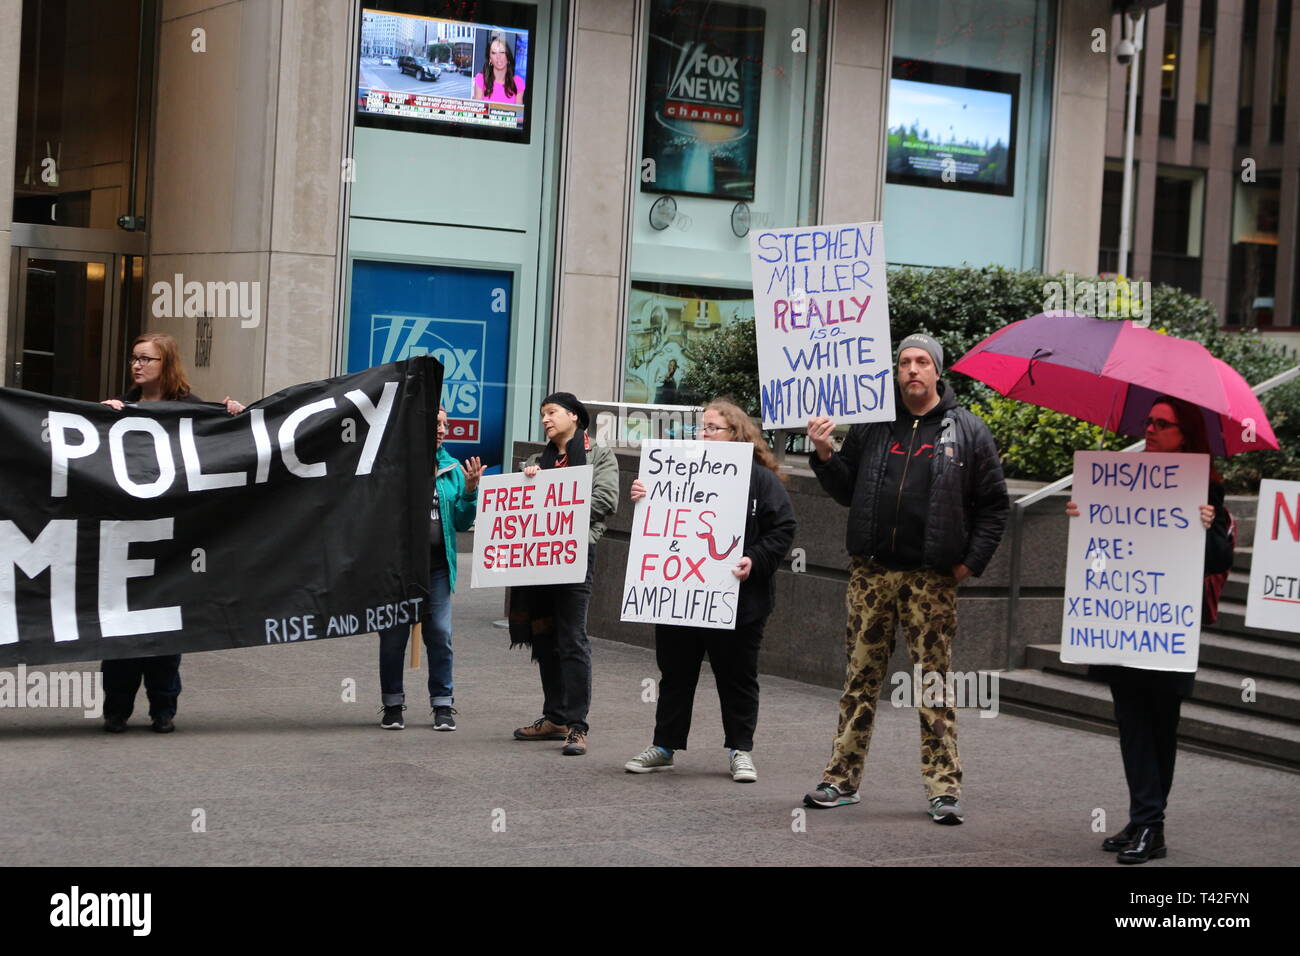 Vu Pro-Immigration protestataires holding signes au cours d'une manifestation à l'extérieur de FOX News sur la 6e Avenue à New York City pour appeler FOX News anti-immigration de la couverture de l'actualité. Banque D'Images